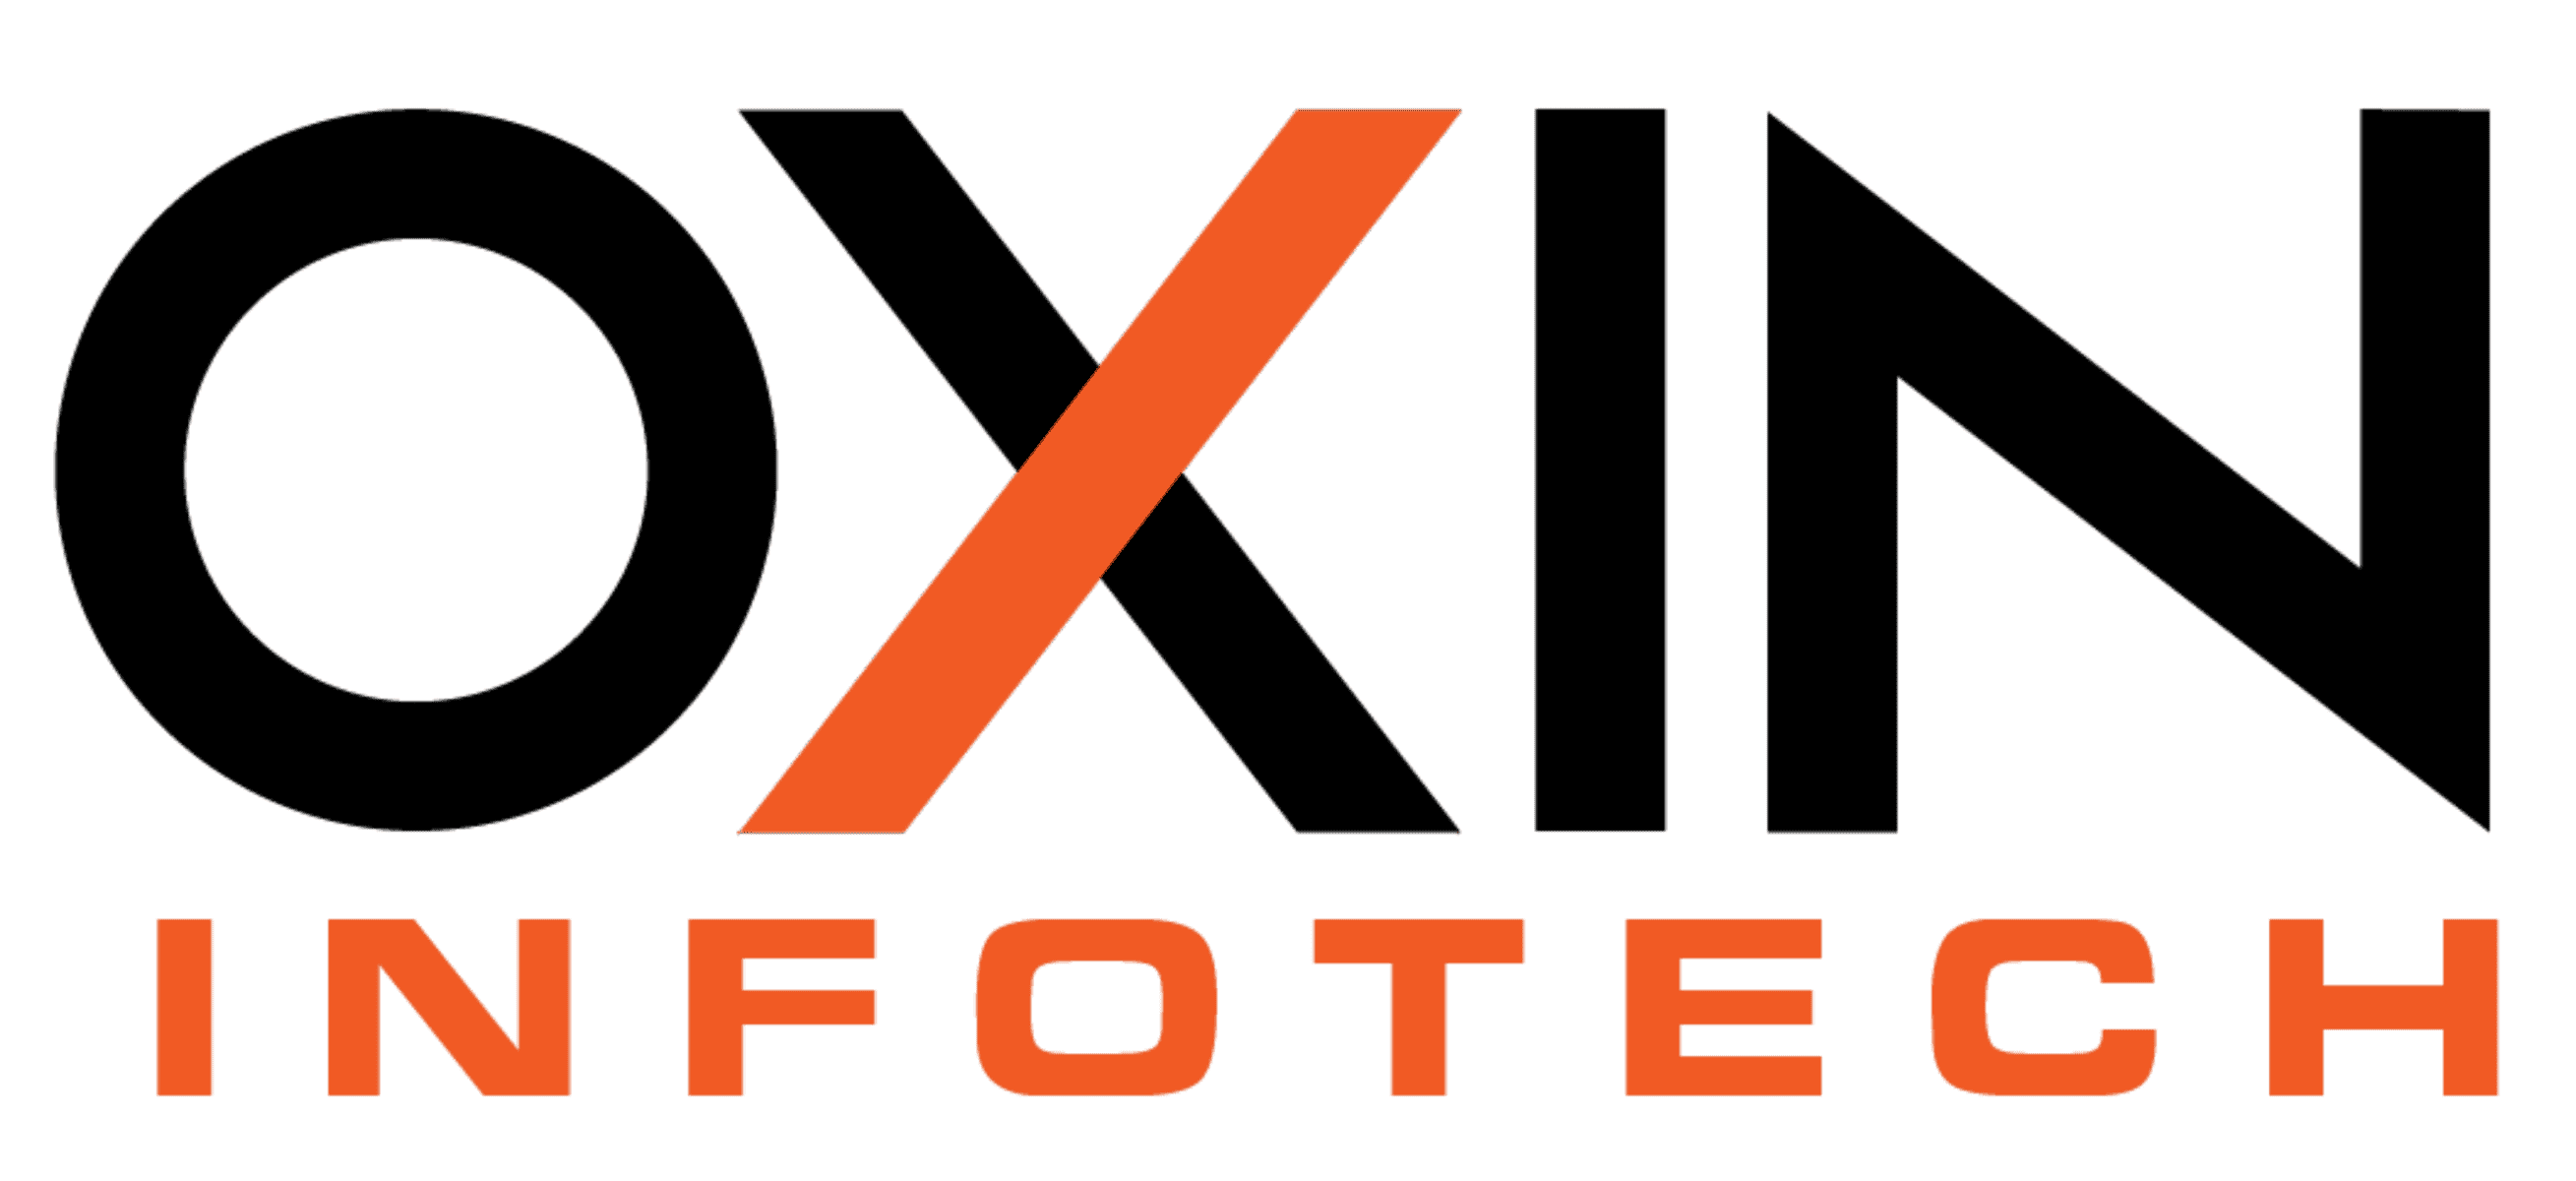 Oxin Infotech LLC